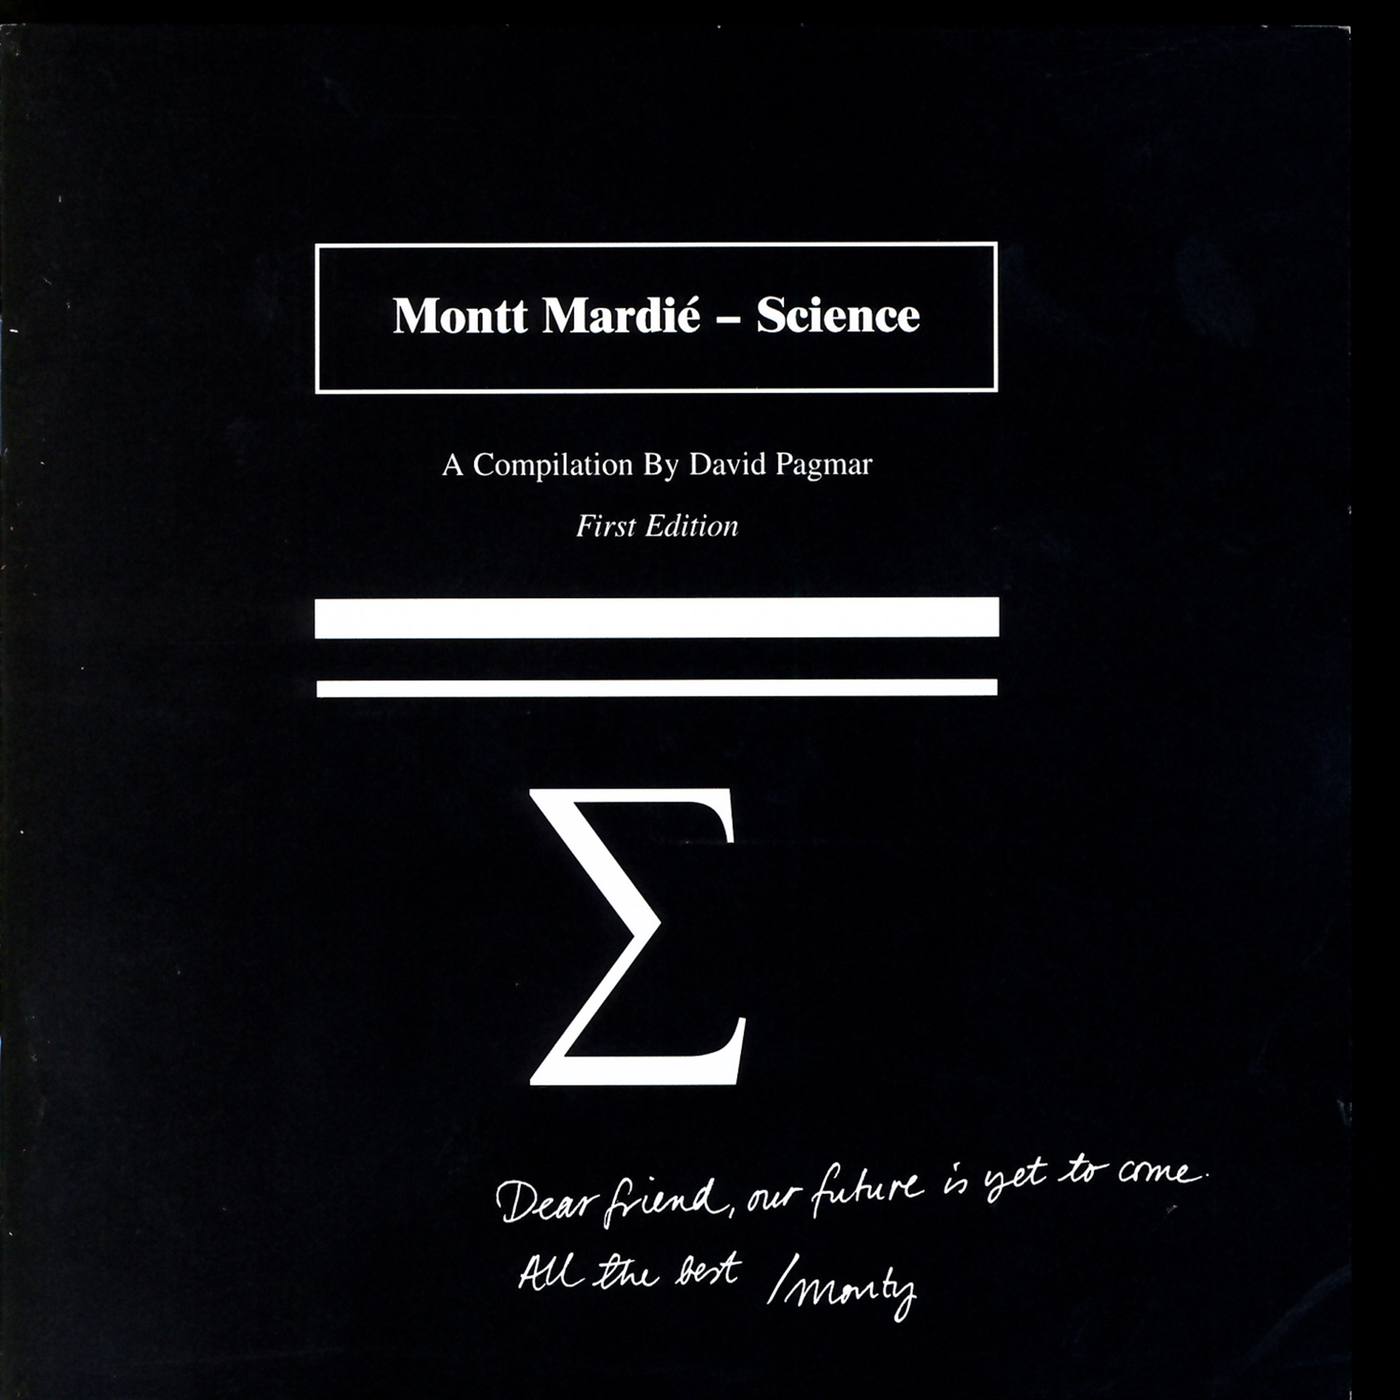 Montt Mardié – Science